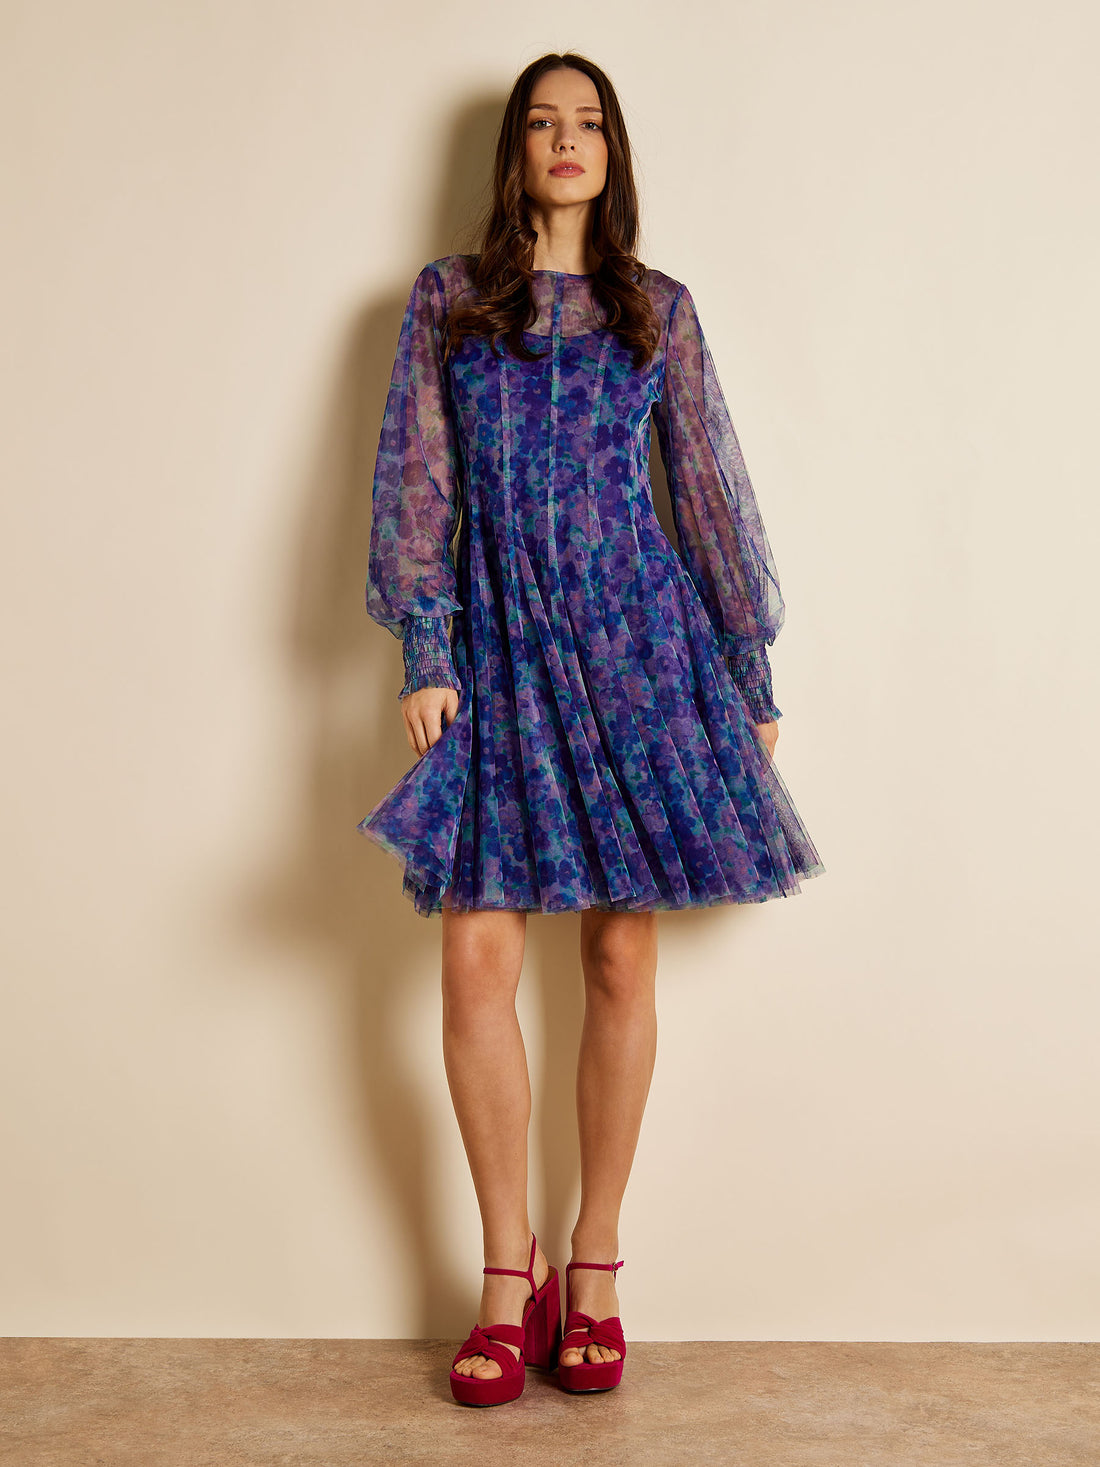 Ella Ashbee Dress | GWD Fashion